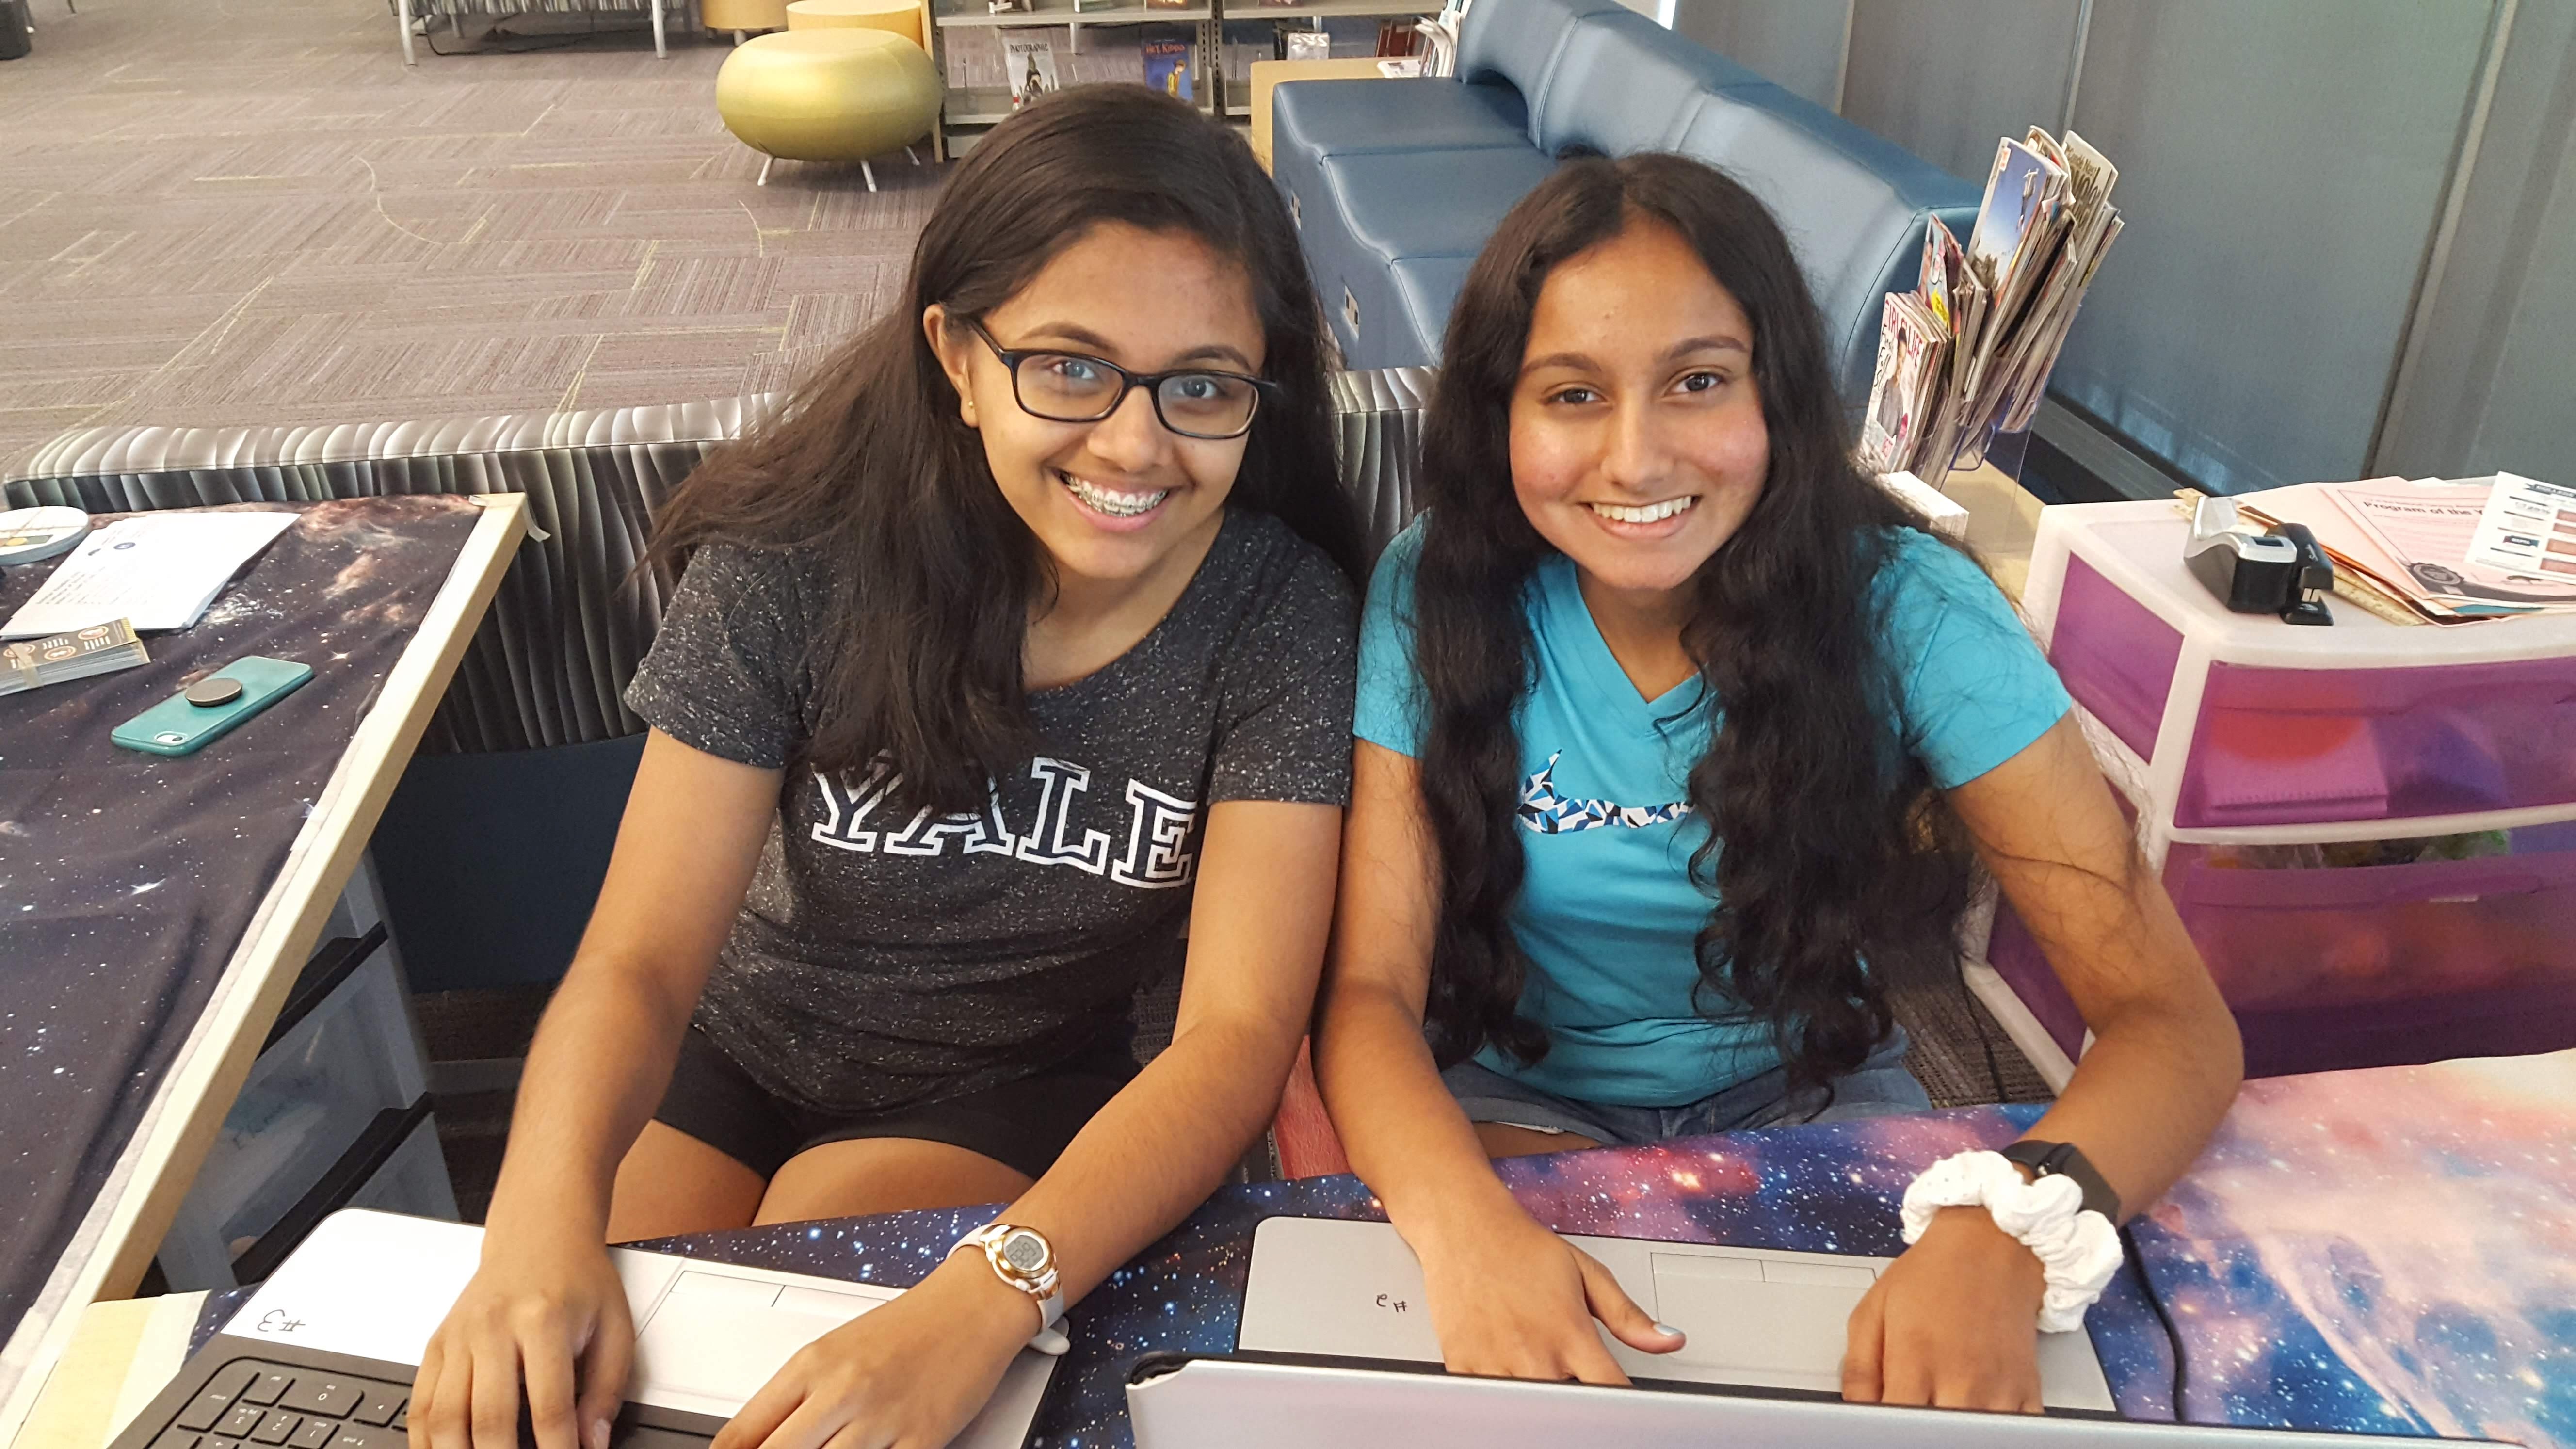 Teen volunteers help with code class